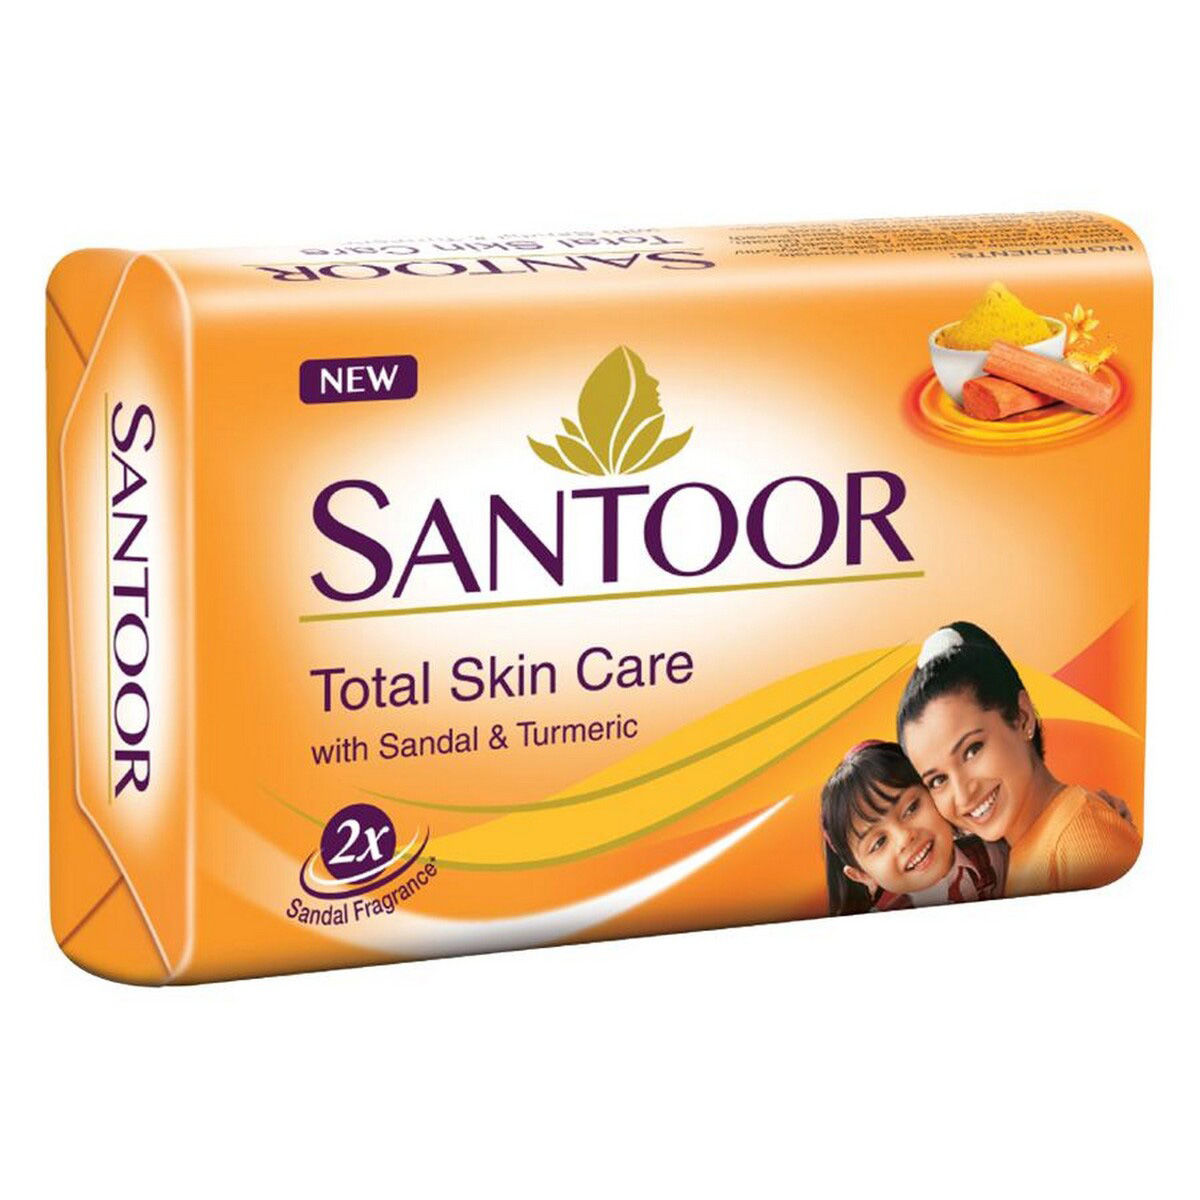 Santoor Sandal & Turmeric Soap, 100 gm, Pack of 1 